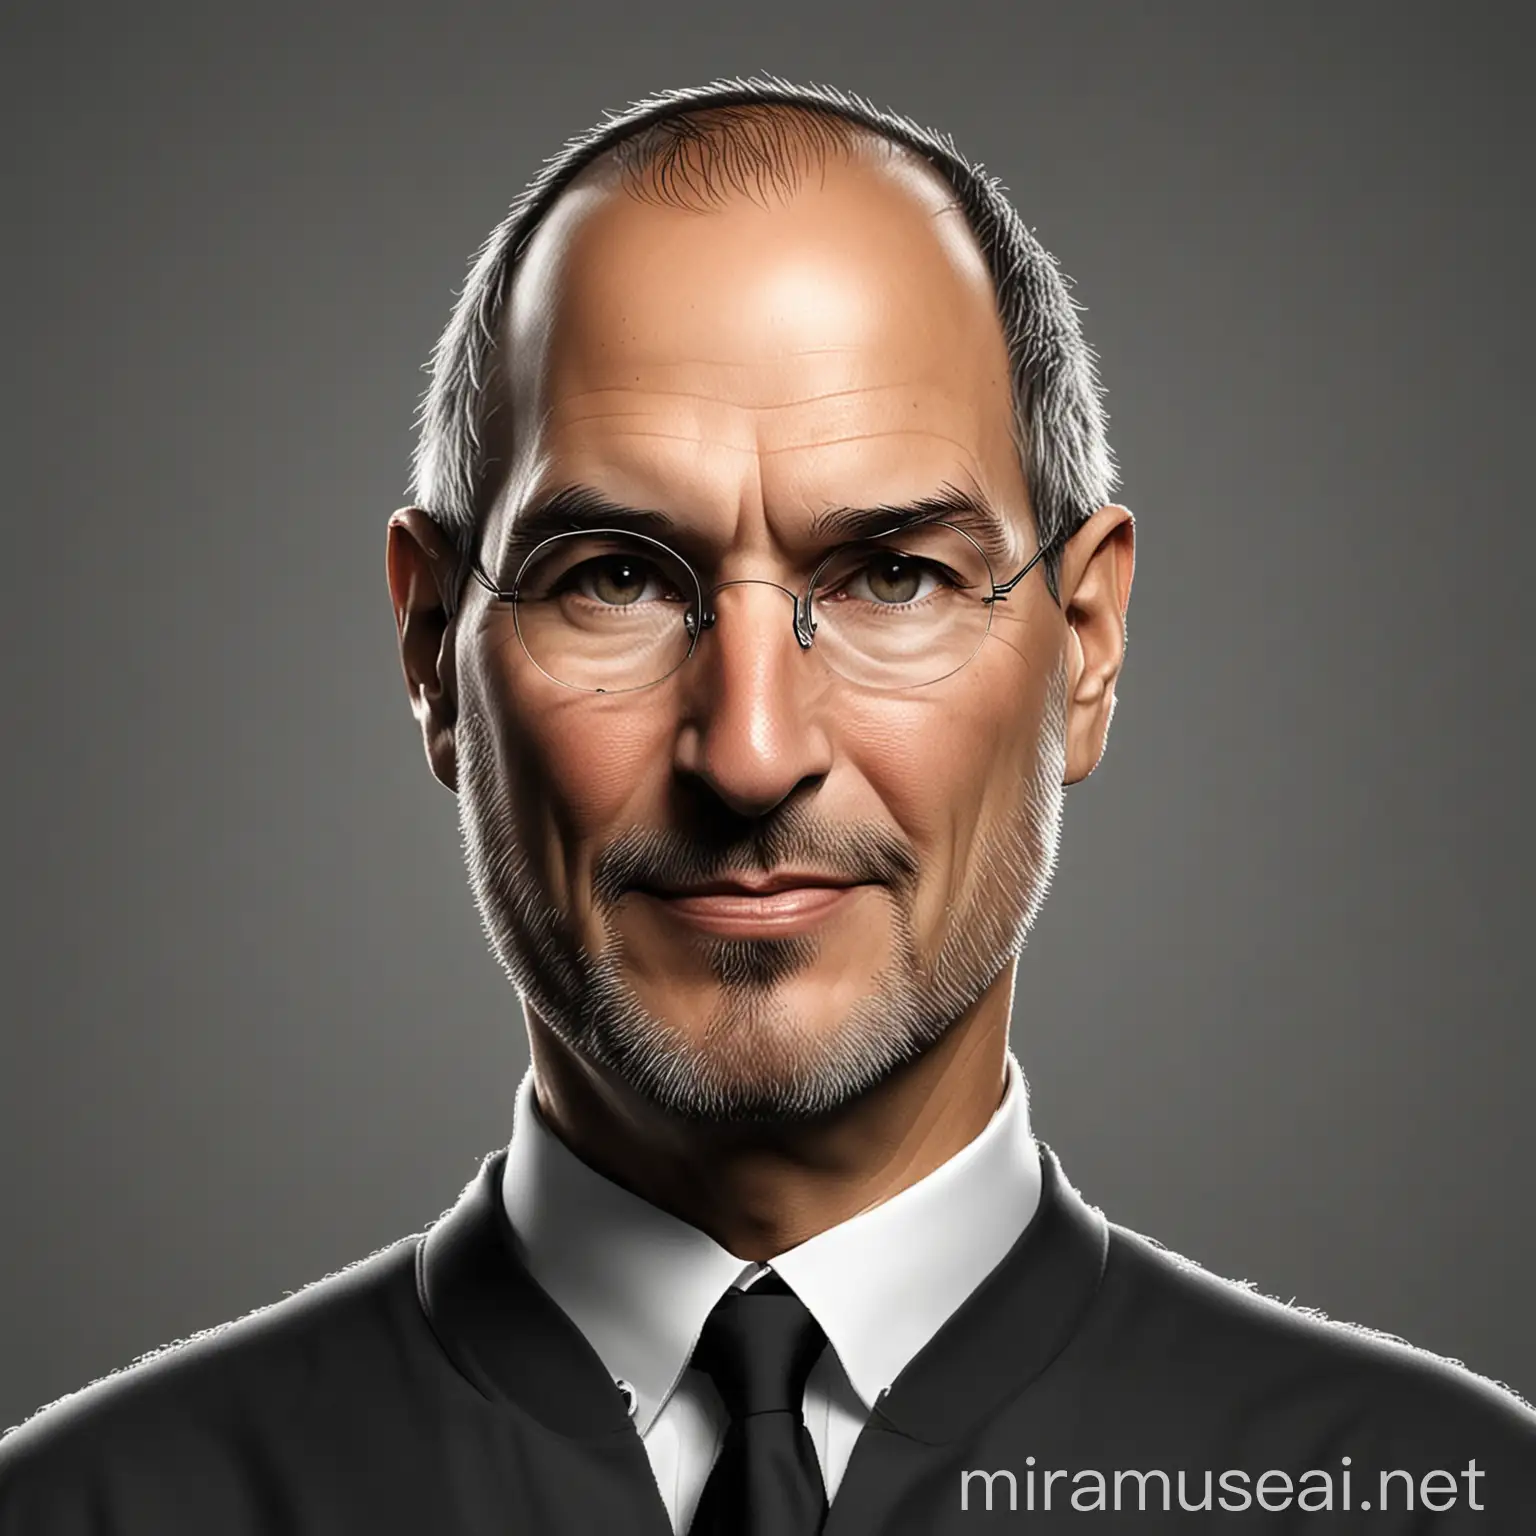 Steve Jobs Cartoon Avatar CEO of Apple